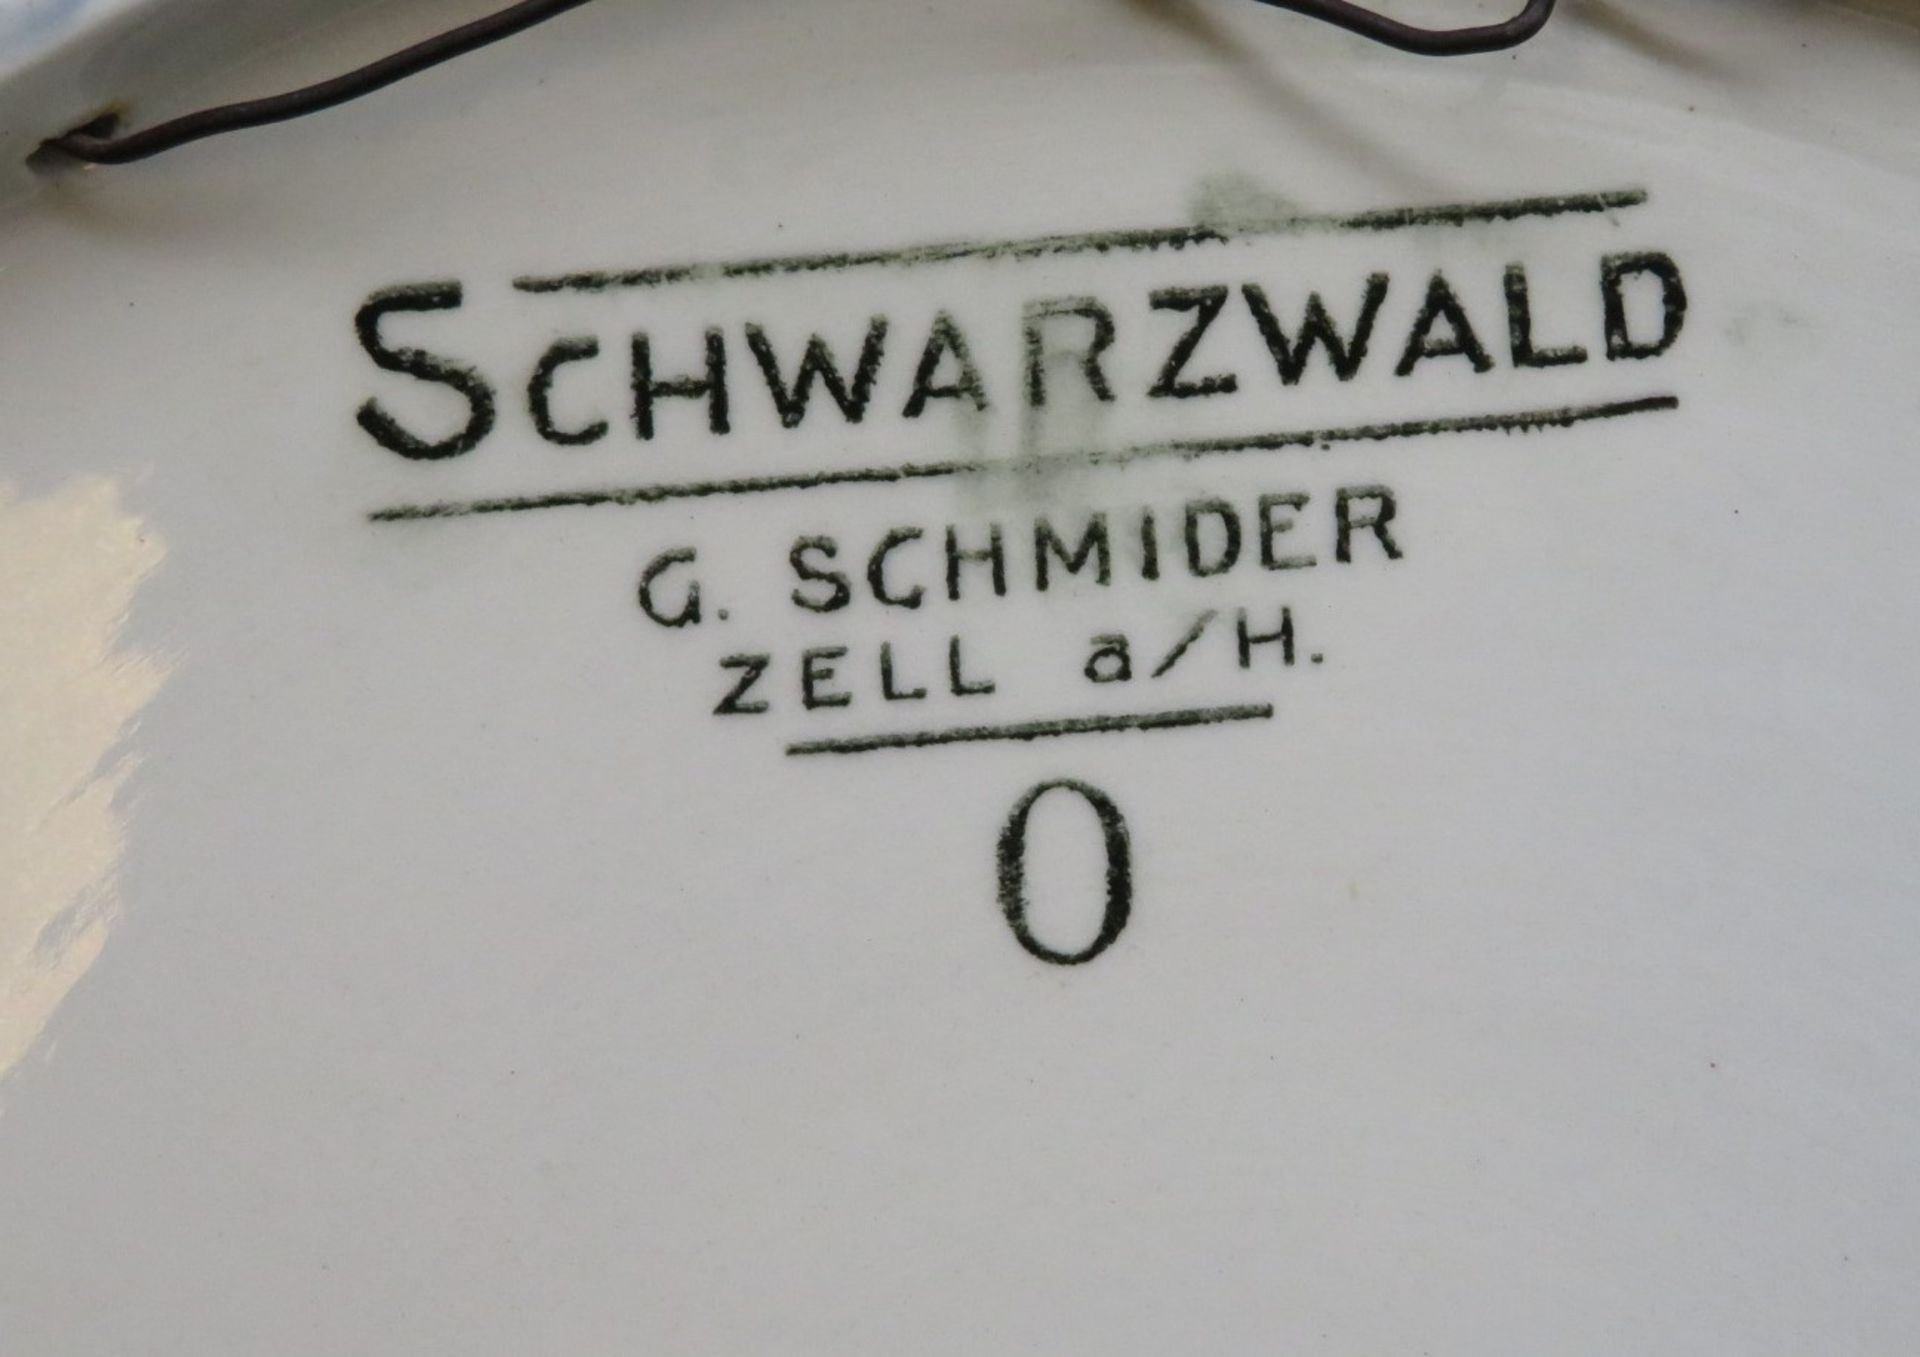 2 Teller, G. Schmieder Zell am Hammersbach, Fayence mit Ansichten von Schwarzwaldhäusern, gem., h 3 - Bild 3 aus 3